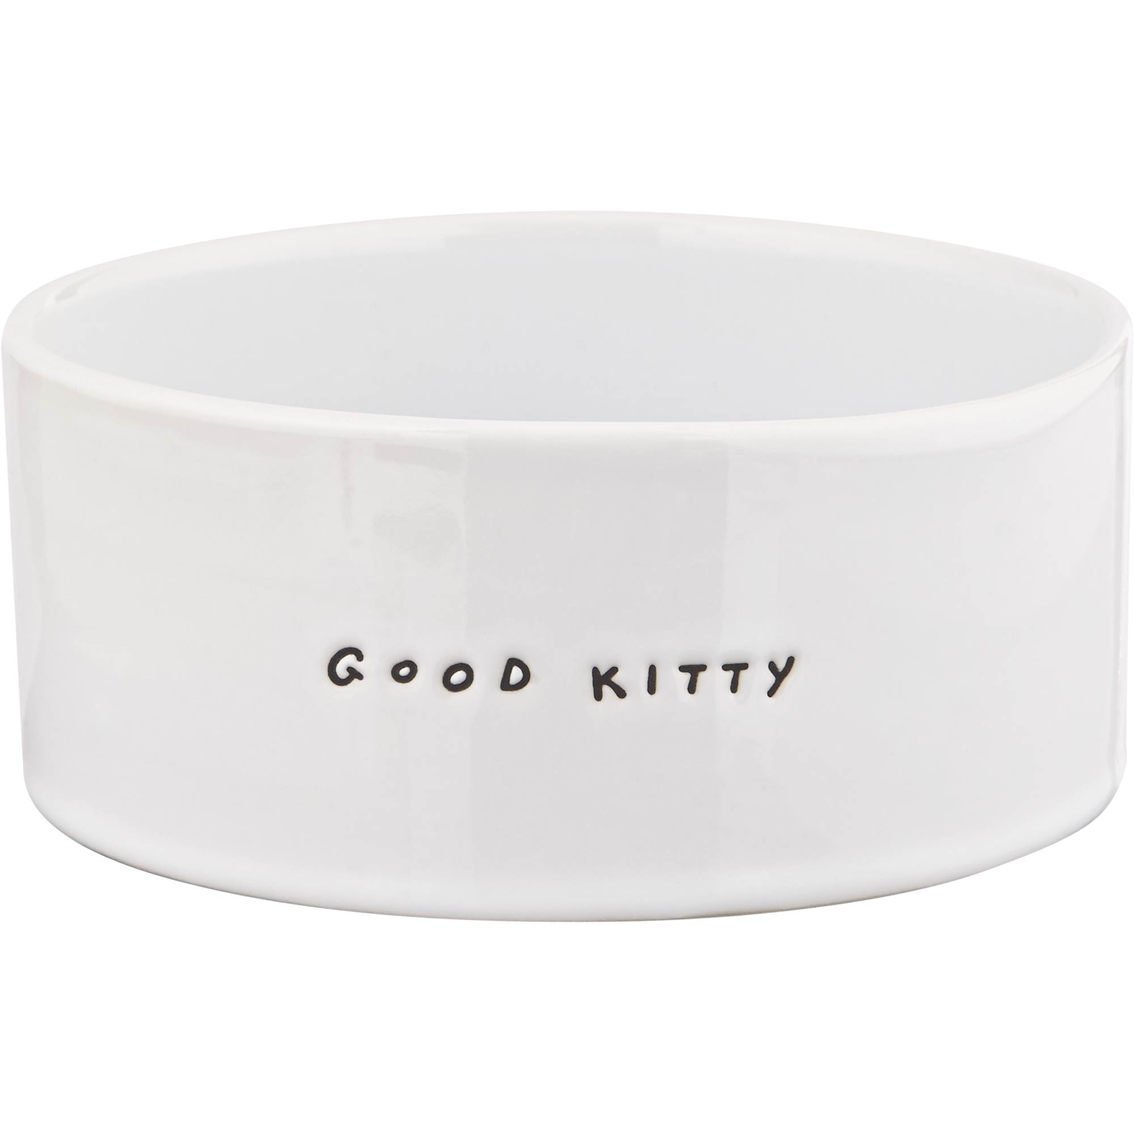 Harmony Good Kitty Ceramic Cat Bowl - Image 2 of 3